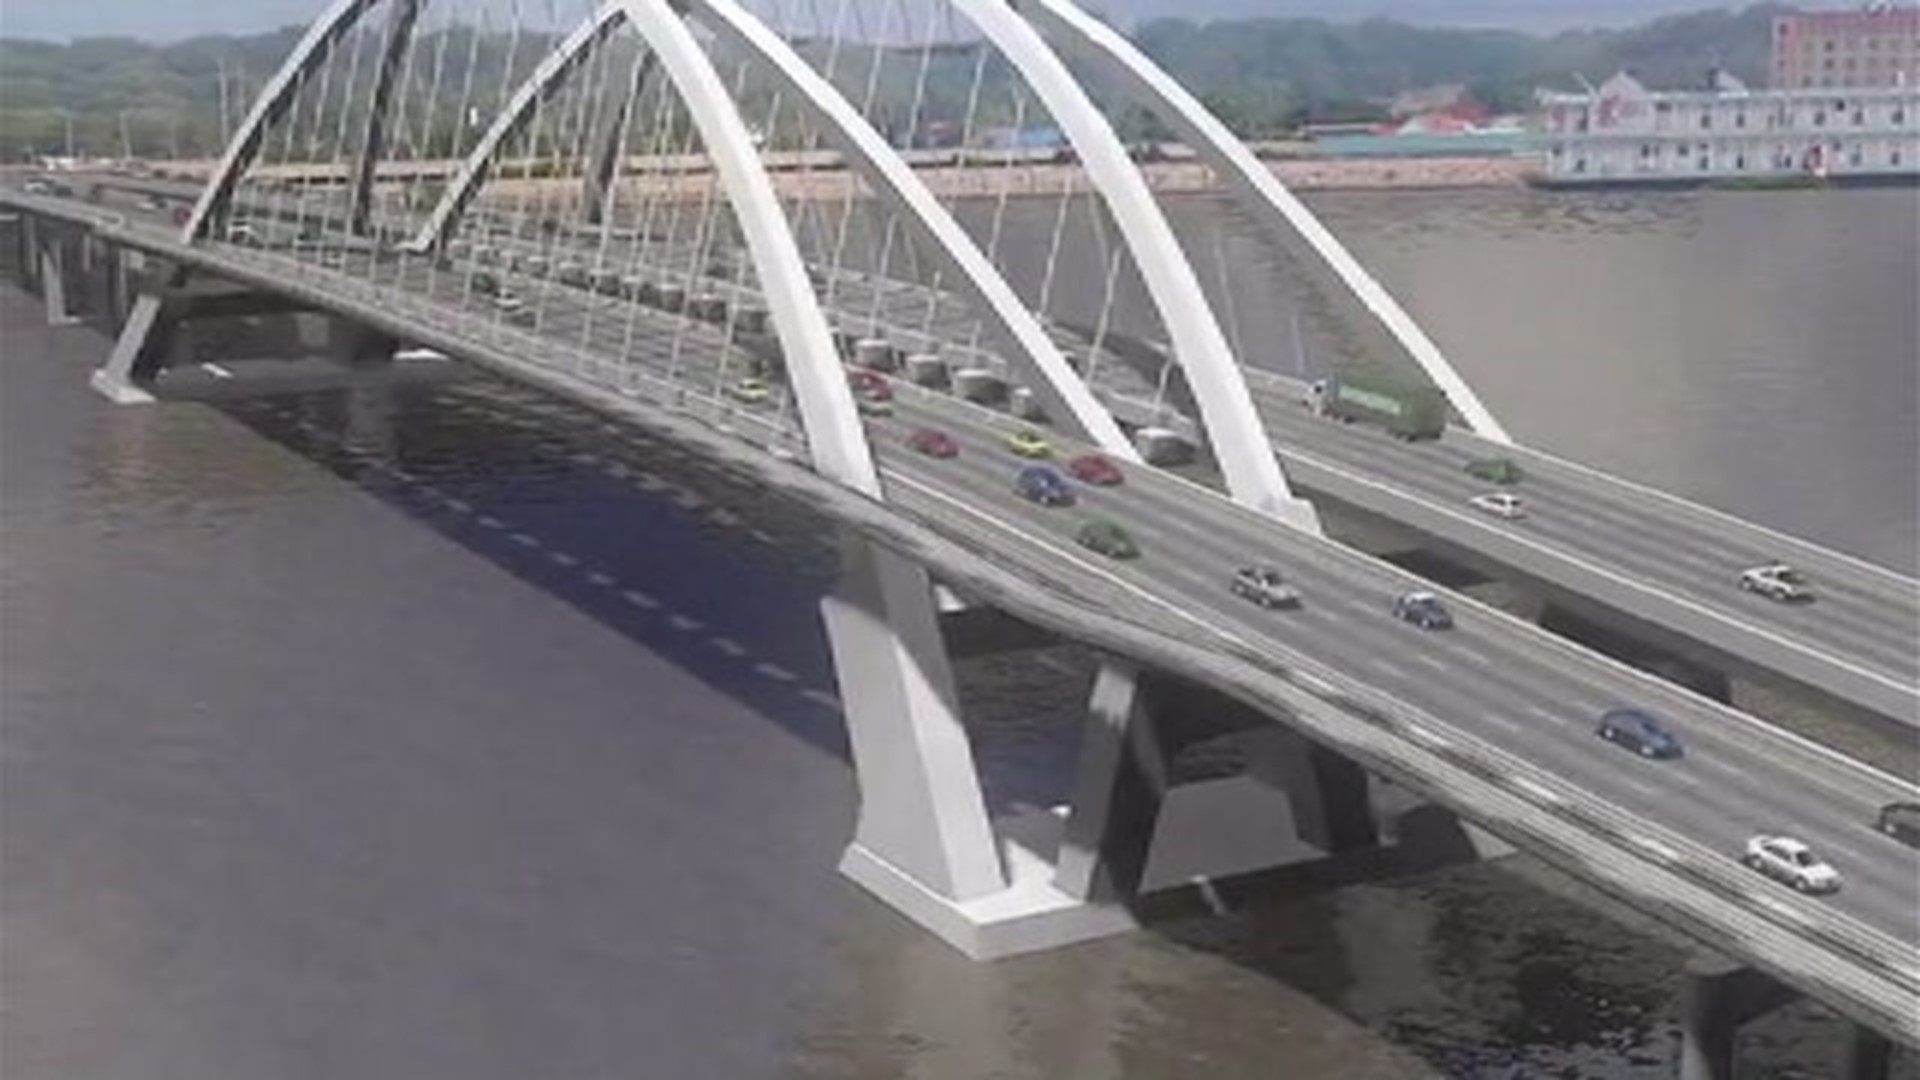 Contractors hoping to score big with I-74 bridge construction deals